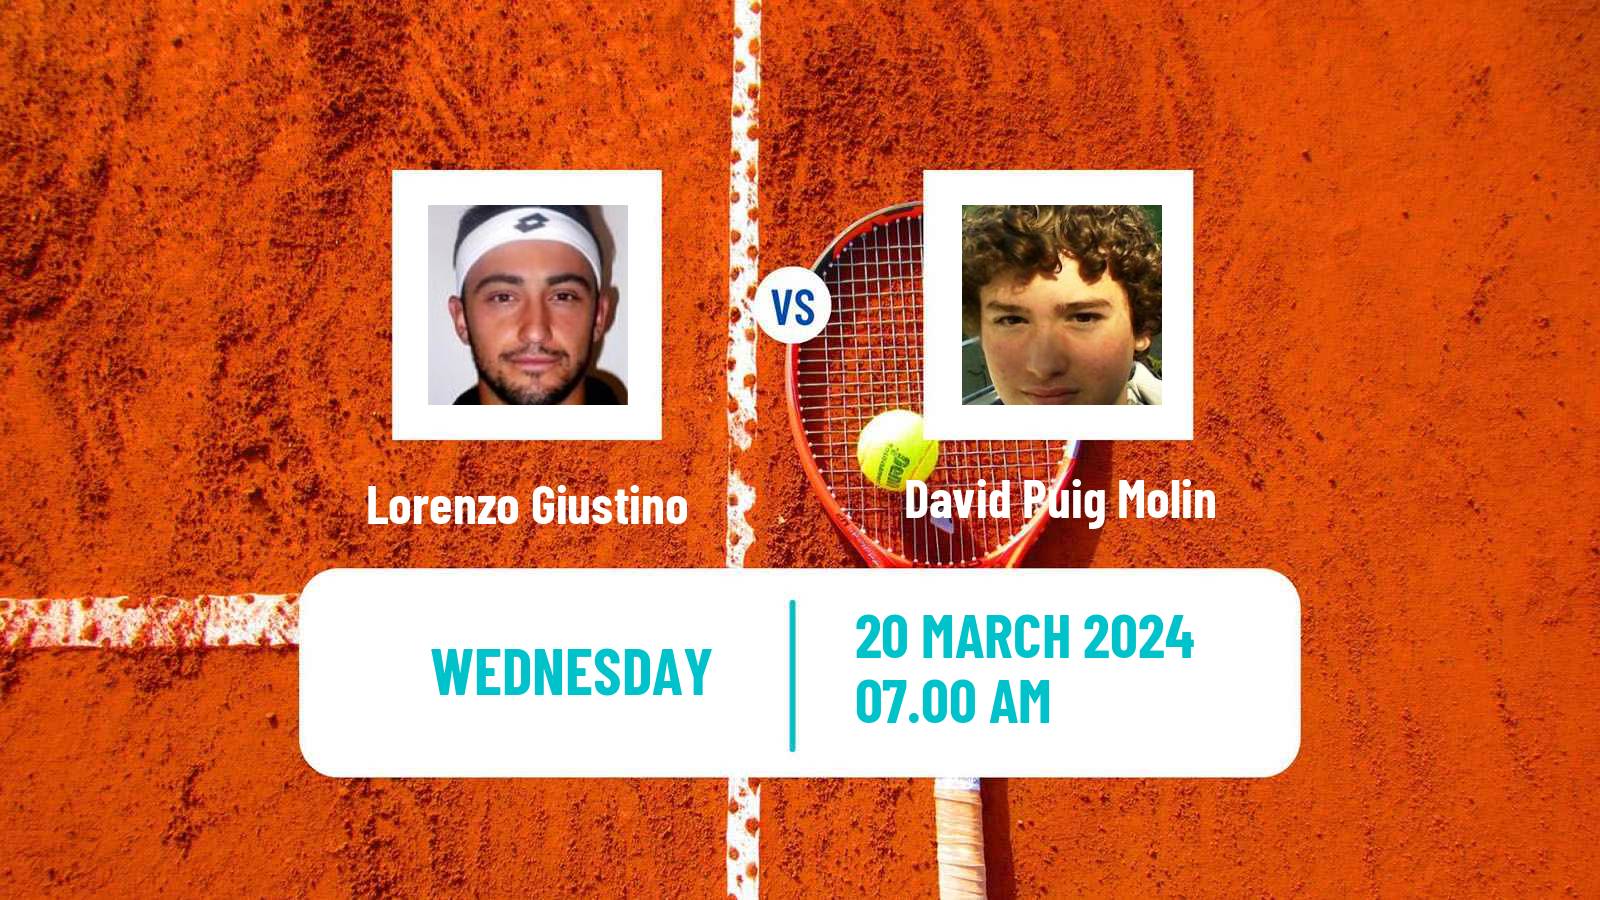 Tennis ITF M25 Badalona Men Lorenzo Giustino - David Puig Molin